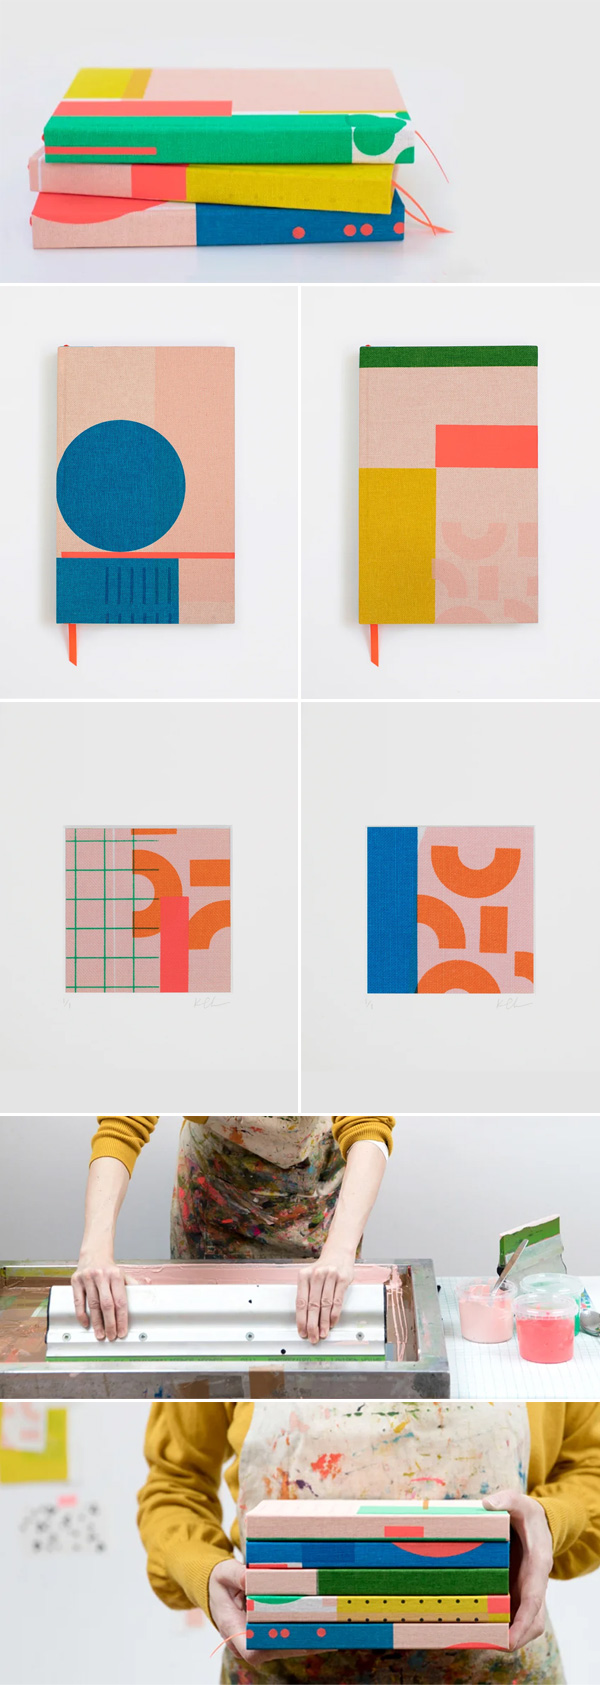 Kate Clarke Studio | Encadernação / cadernos feitos à mão, encadernados com tecido